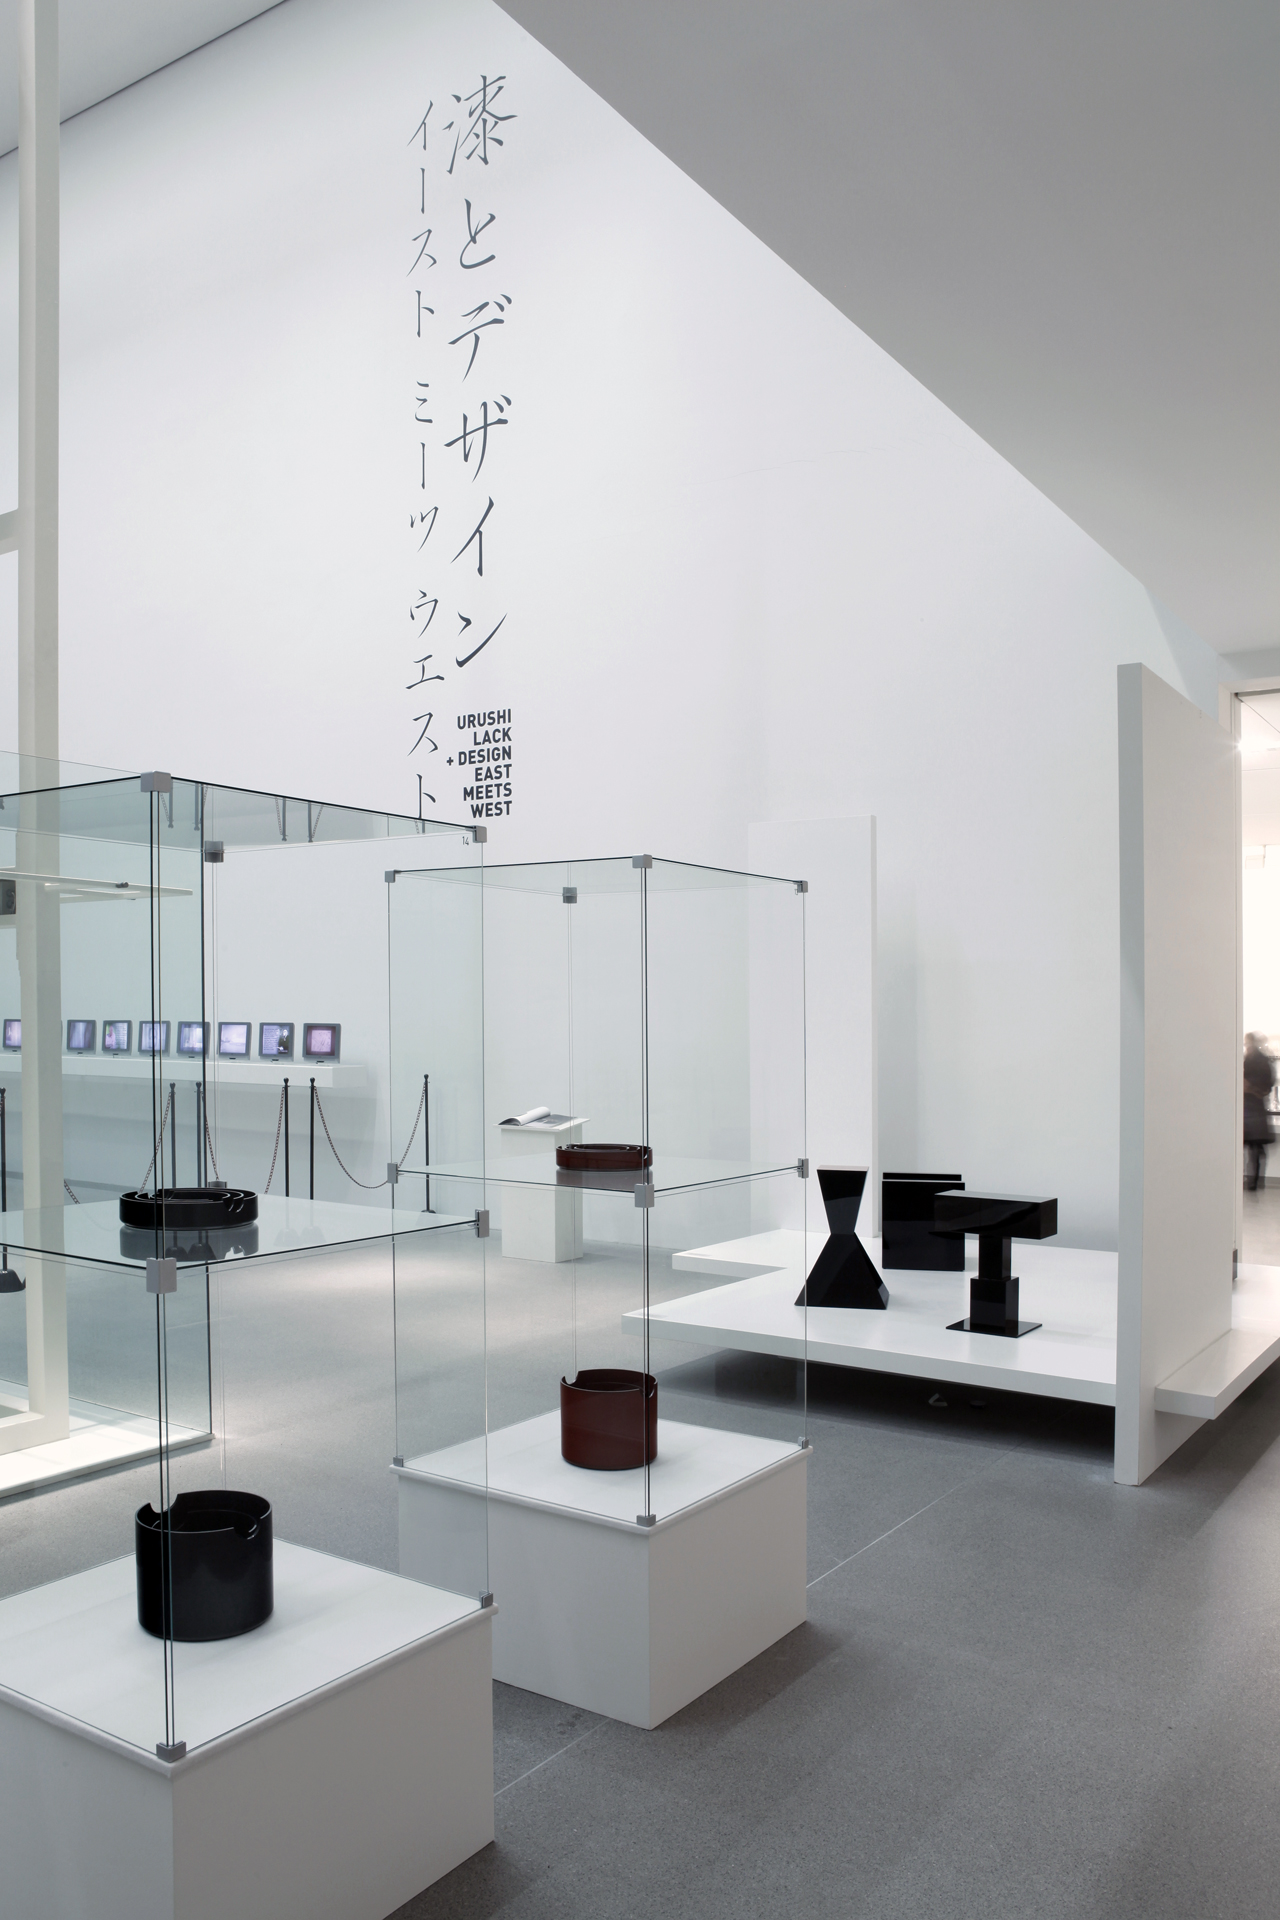 Blick in die Ausstellung. Zu sehen sind in einem lichtdurchfluteten Raum hohe Glasvitrinen und weiße Podeste in und auf denen jeweils schwarze Exponate platziert sind. An der rechten Wand sind Japanische Schriftzeichen zu erkennen.